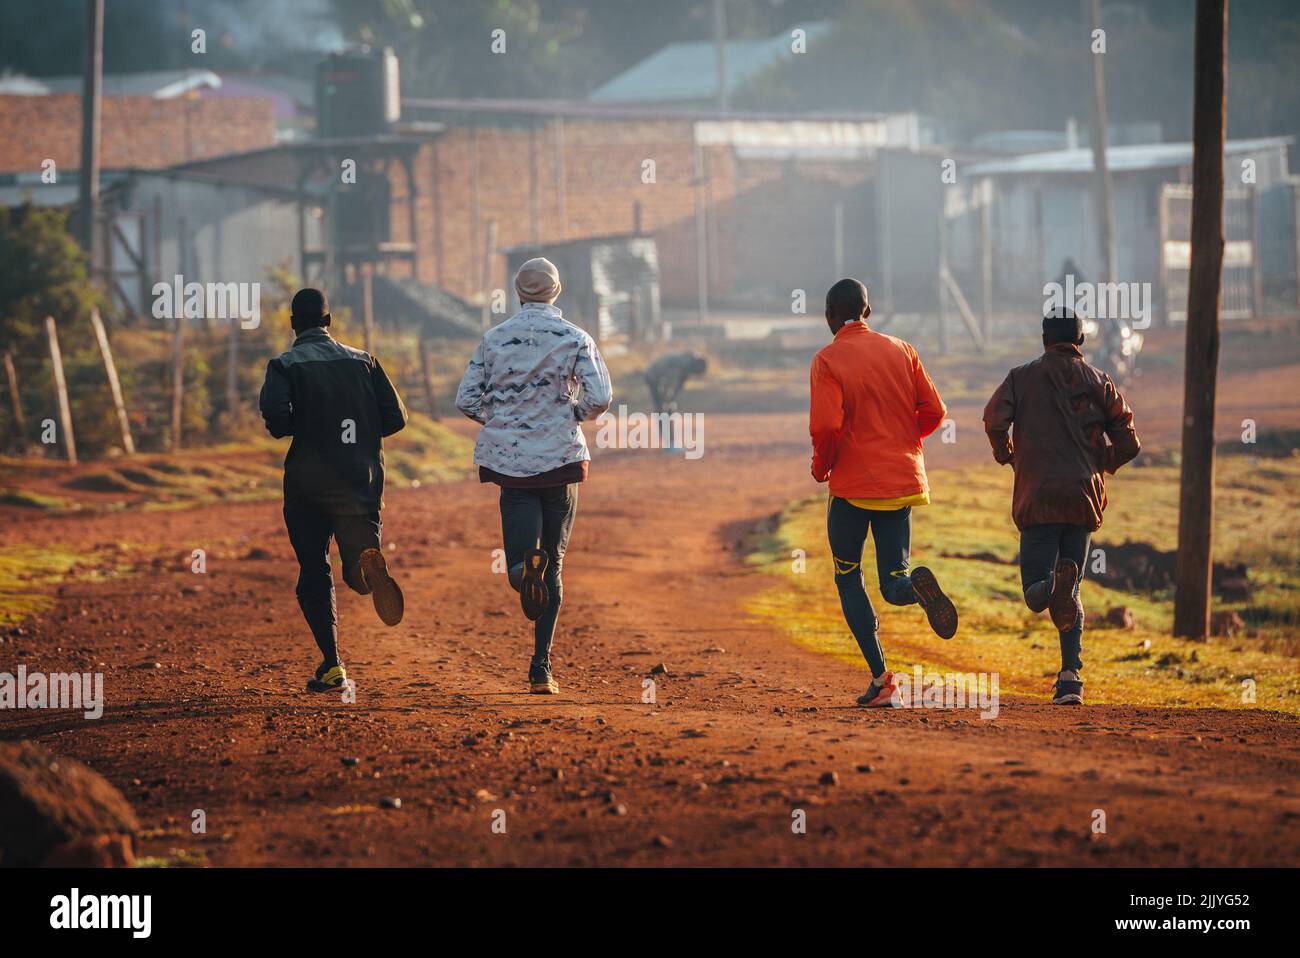 Lauftraining in Kenia. Eine Gruppe kenianischer Läufer bereitet sich auf einen Marathon vor und läuft auf rotem Boden. Marathonlauf, Leichtathletik. Einfaches Sportleben Stockfoto